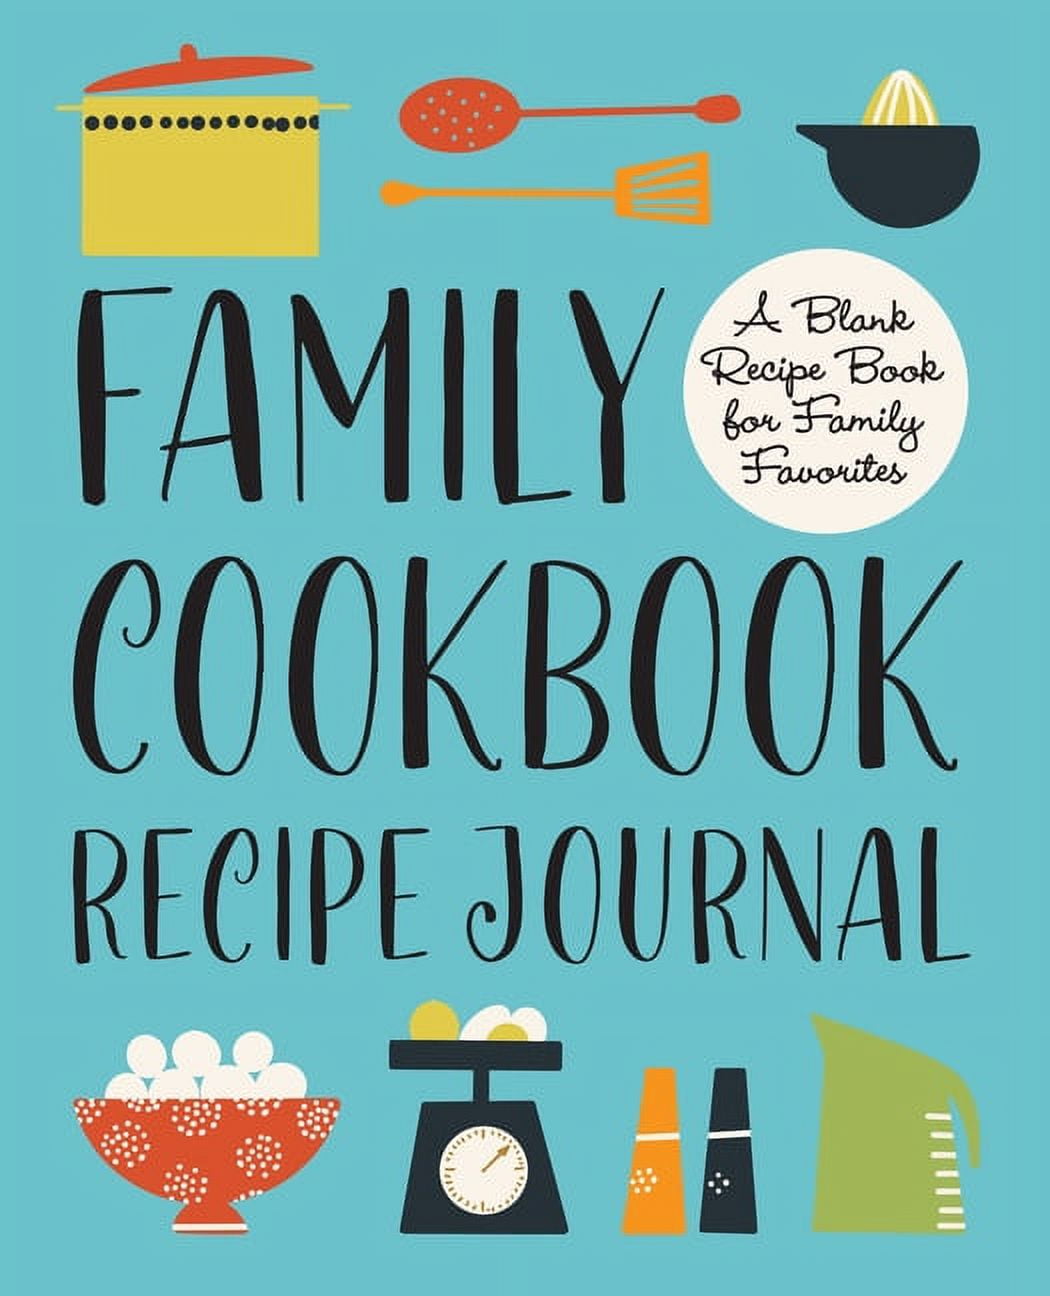 Cookbook Printables: Make A Family Recipe Book - Gluesticks Blog